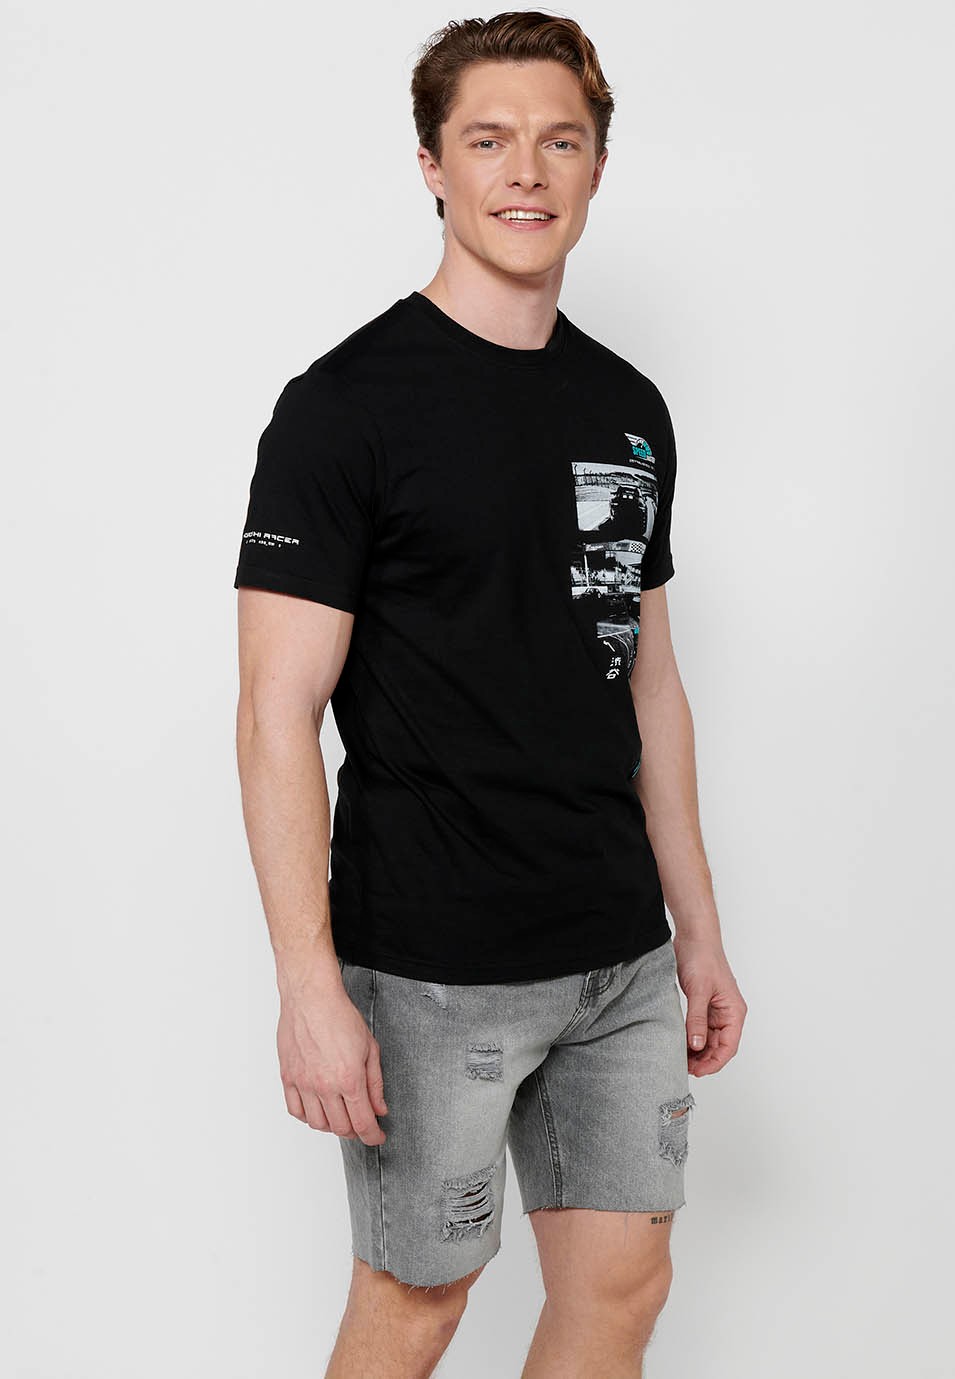 Kurzärmliges T-Shirt aus Baumwolle, mehrfarbiger Brustdruck, schwarze Farbe für Herren